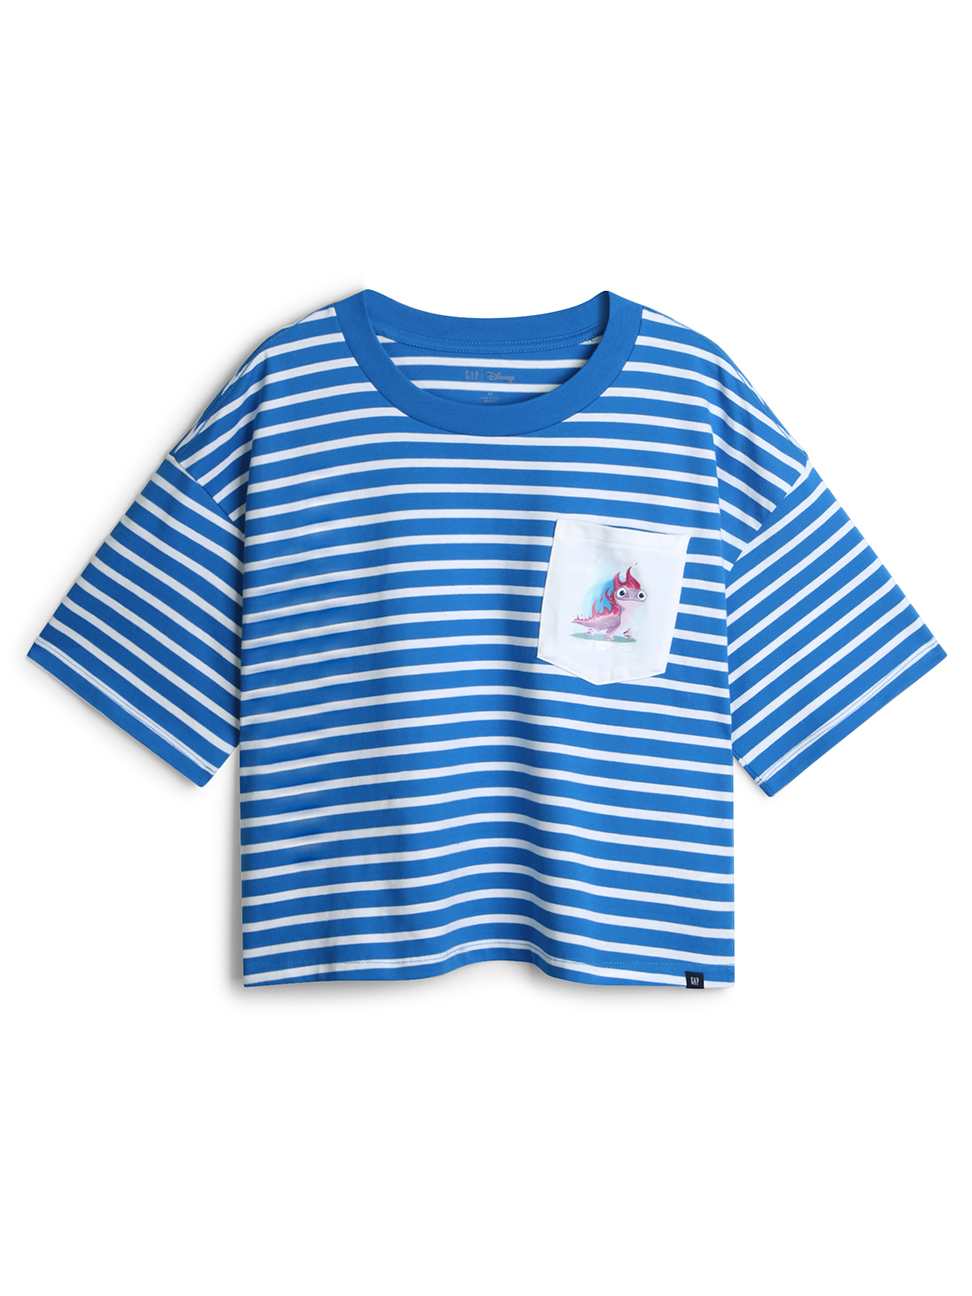 女裝|Gap x Disney迪士尼聯名 冰雪奇緣棉質寬鬆圓領短袖T恤-藍白相間條紋